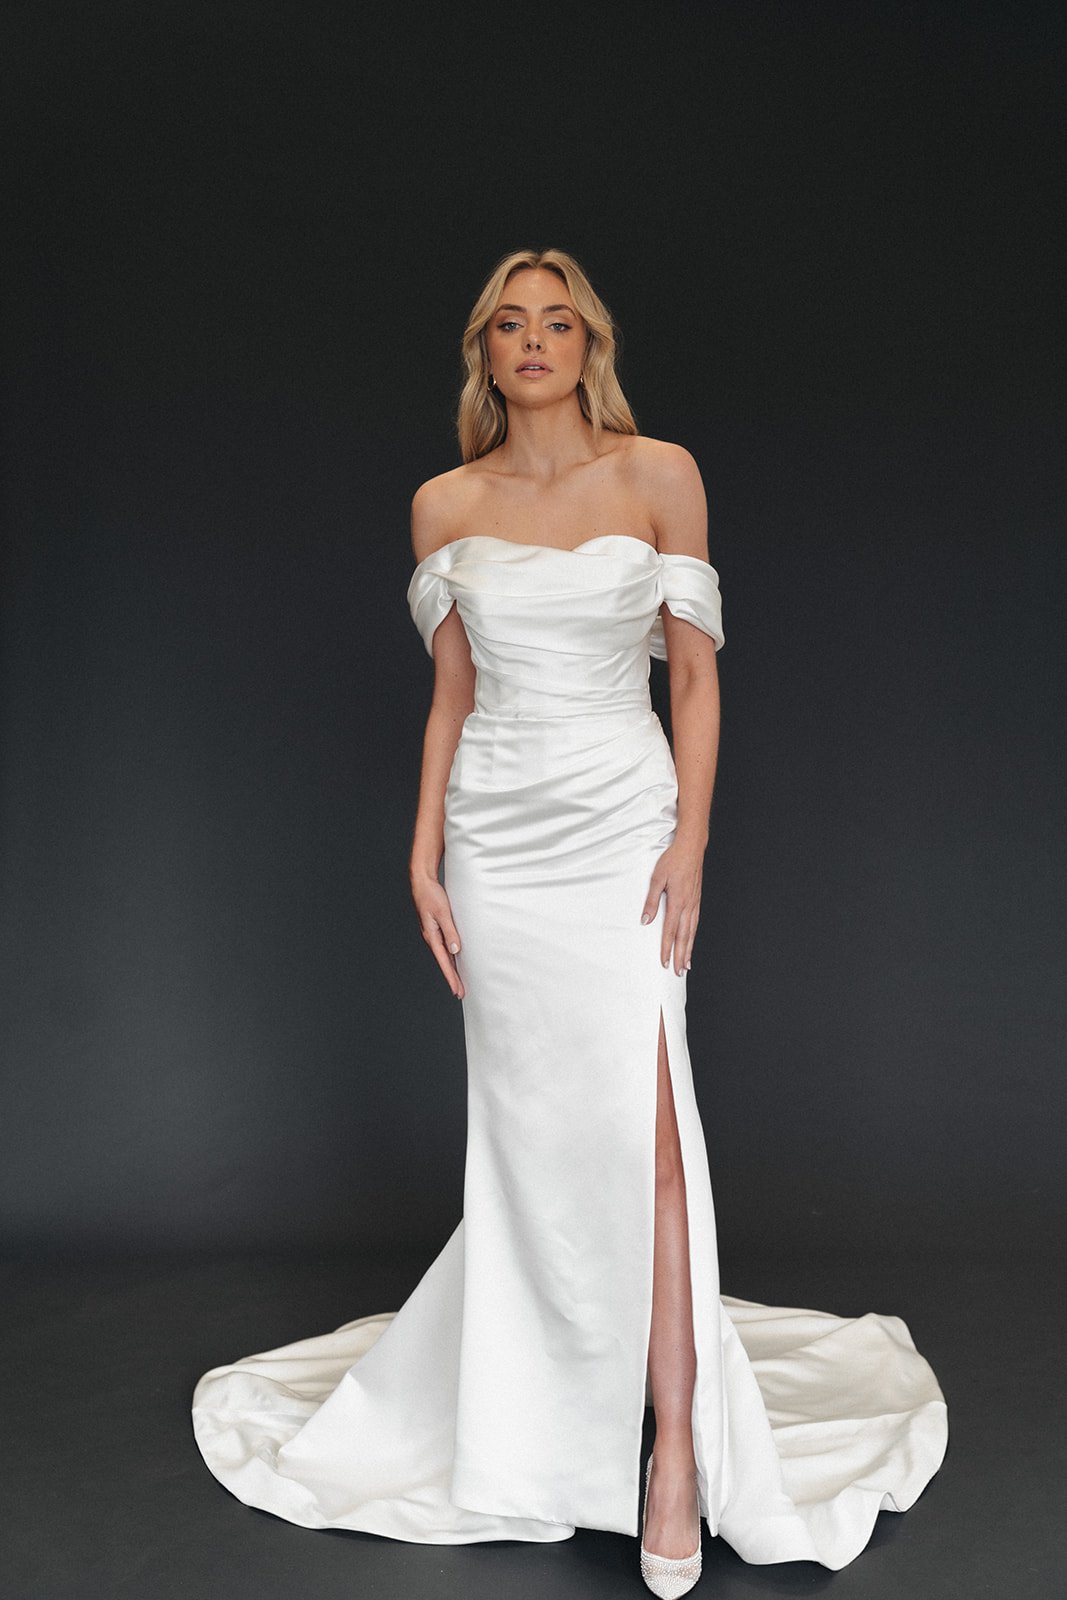 Moira Hughes Aspen Gown Wedding Dress Draped with Split.jpg